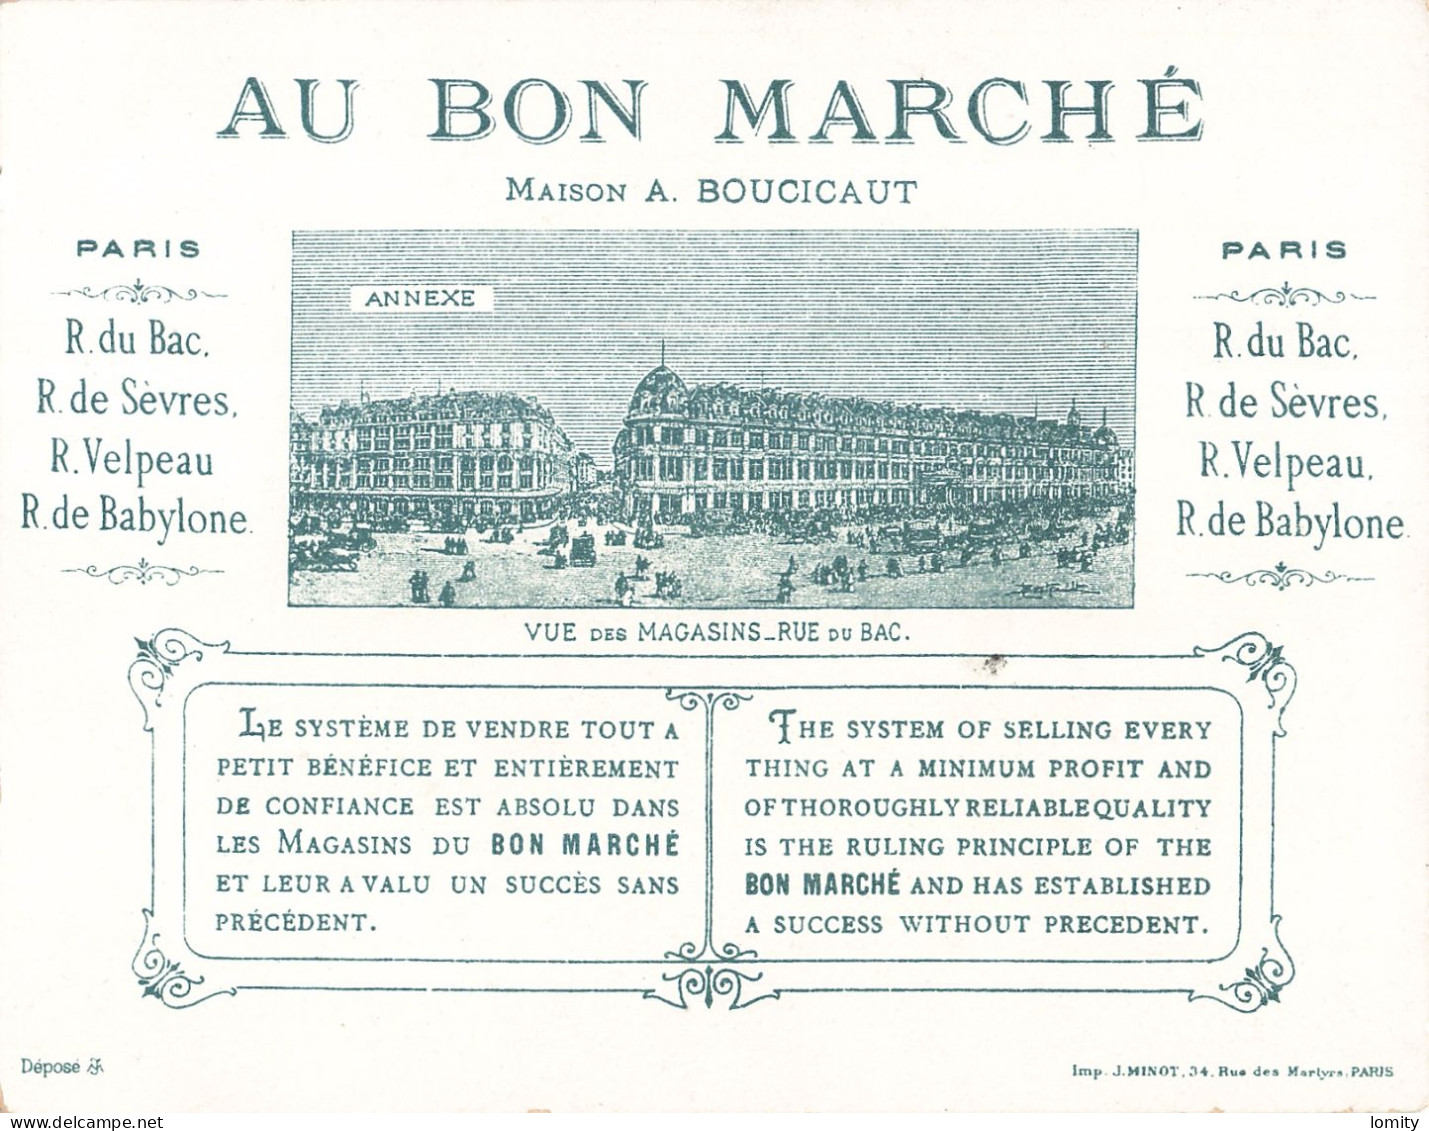 Superbe série 6 chromos Au Bon Marché Paris maison Boucicaut jolie chromo imp Minot format 13.8 x 10.8 cm illustration